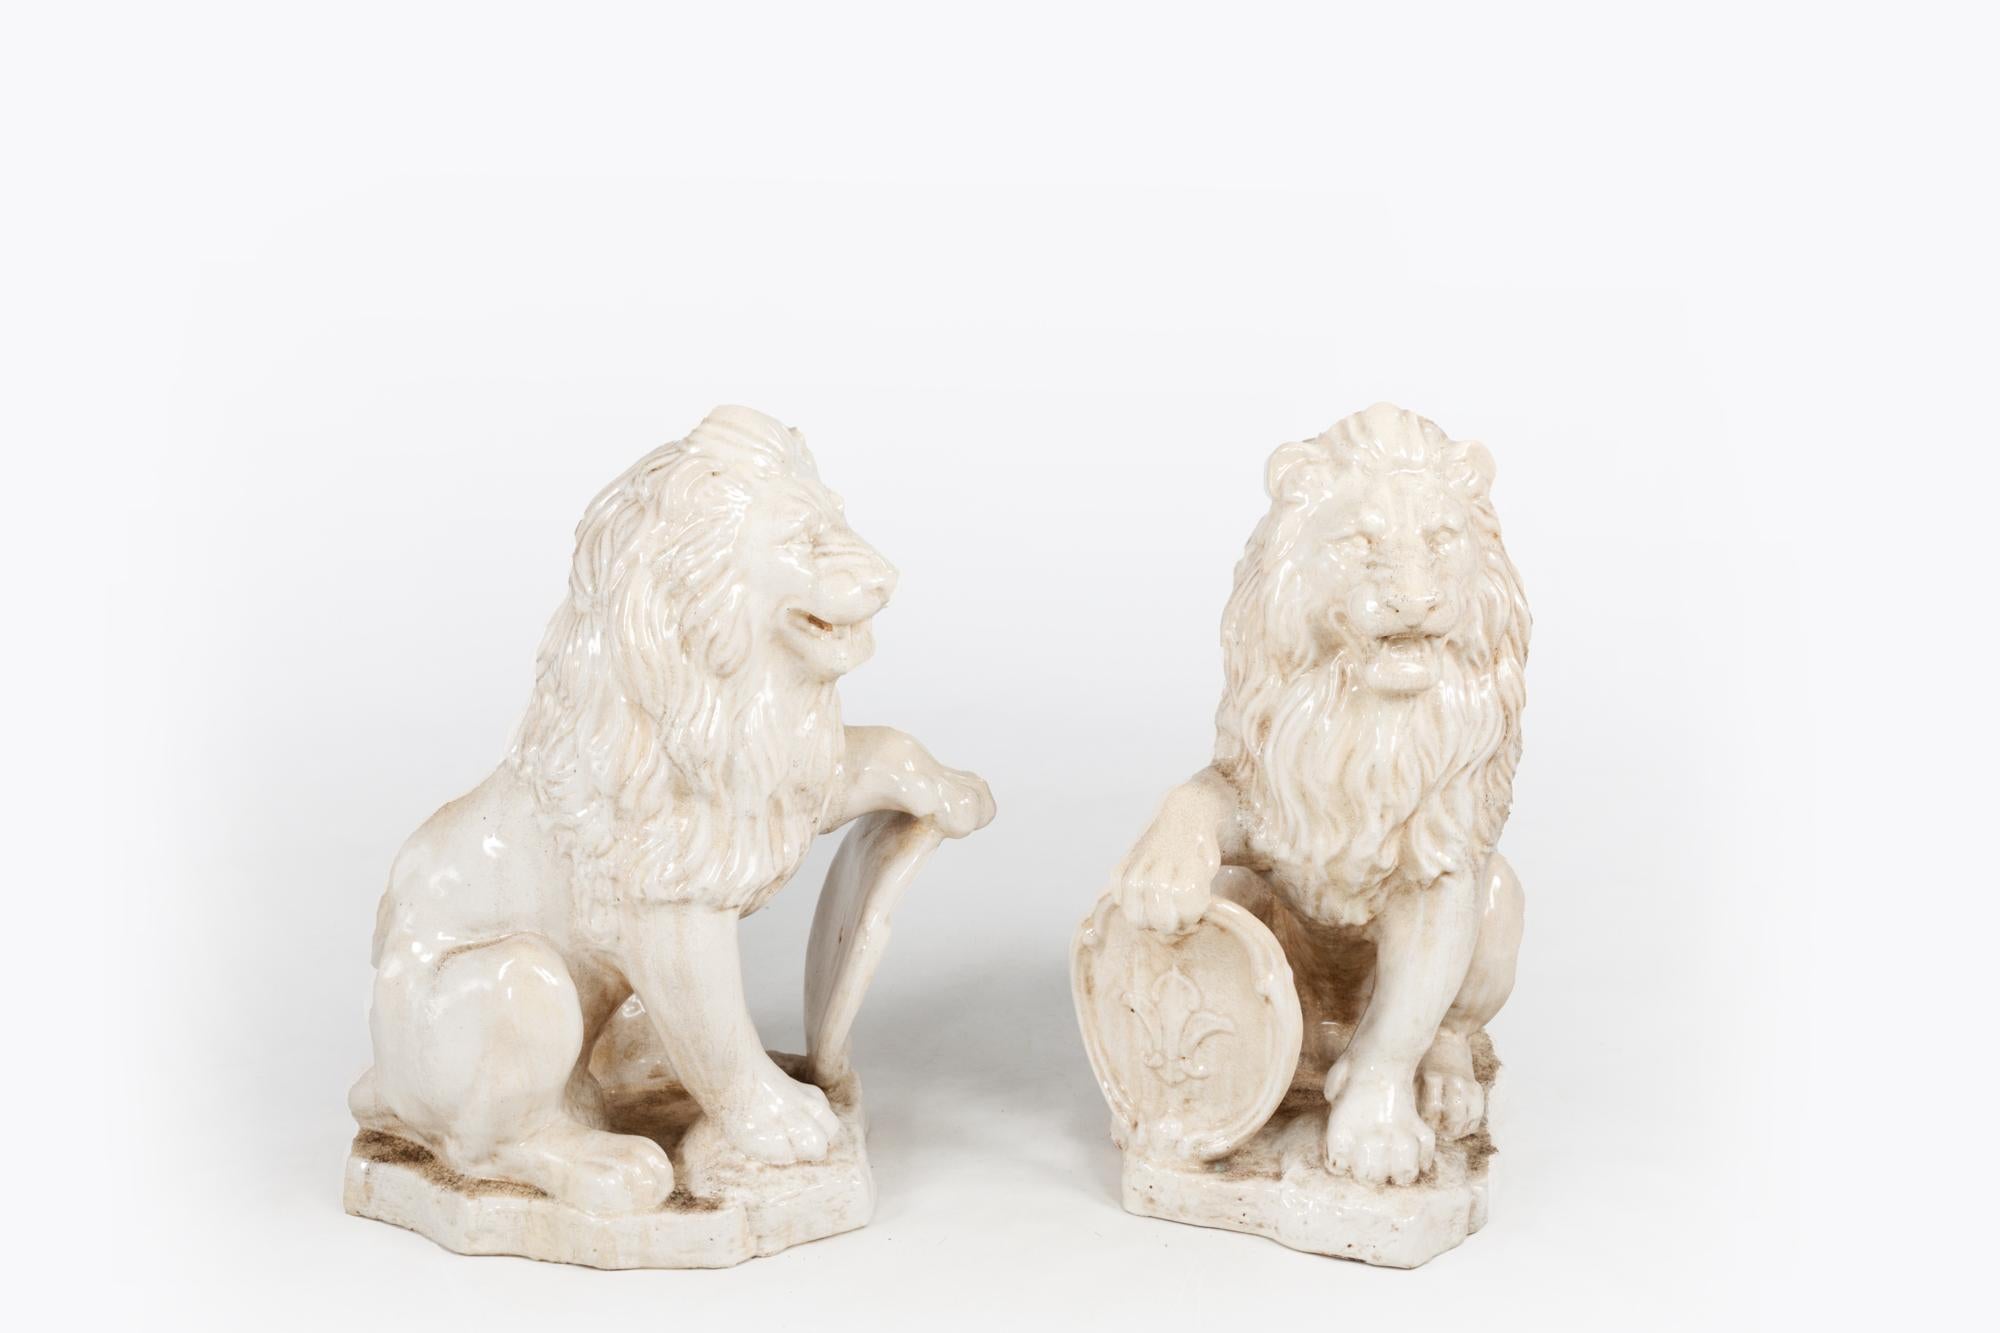 Paire de lions français en terre cuite peinte et émaillée du milieu du XIXe siècle, reposant sur des socles en forme, et saisissant des boucliers ovales en forme de fleur de lys. Vers 1840.

Les sculptures de lions se trouvaient souvent dans les